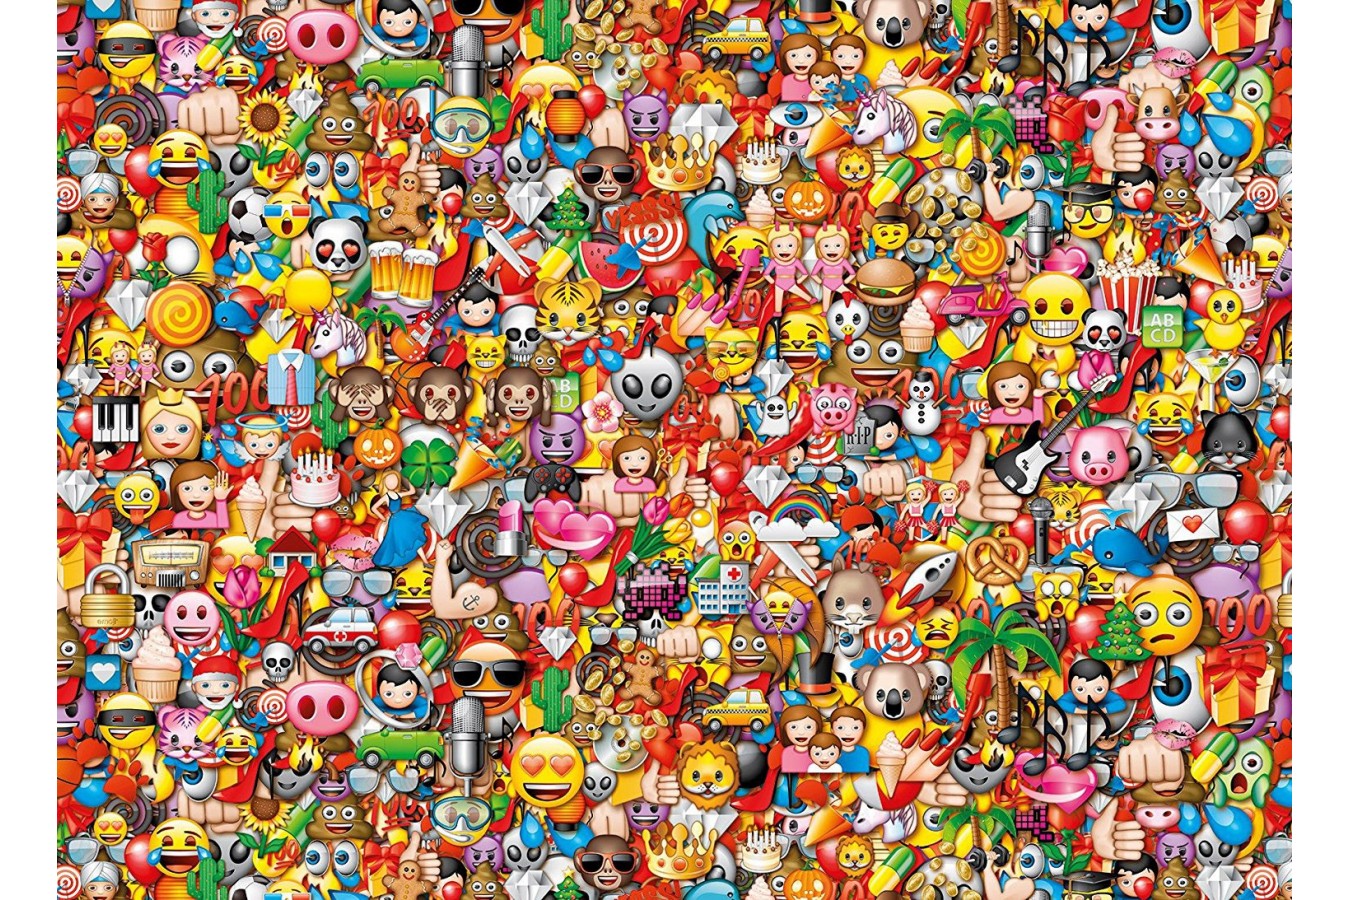 Puzzle Clementoni - Emoji - Impossible Puzzle!, 1000 piese dificile (60910)